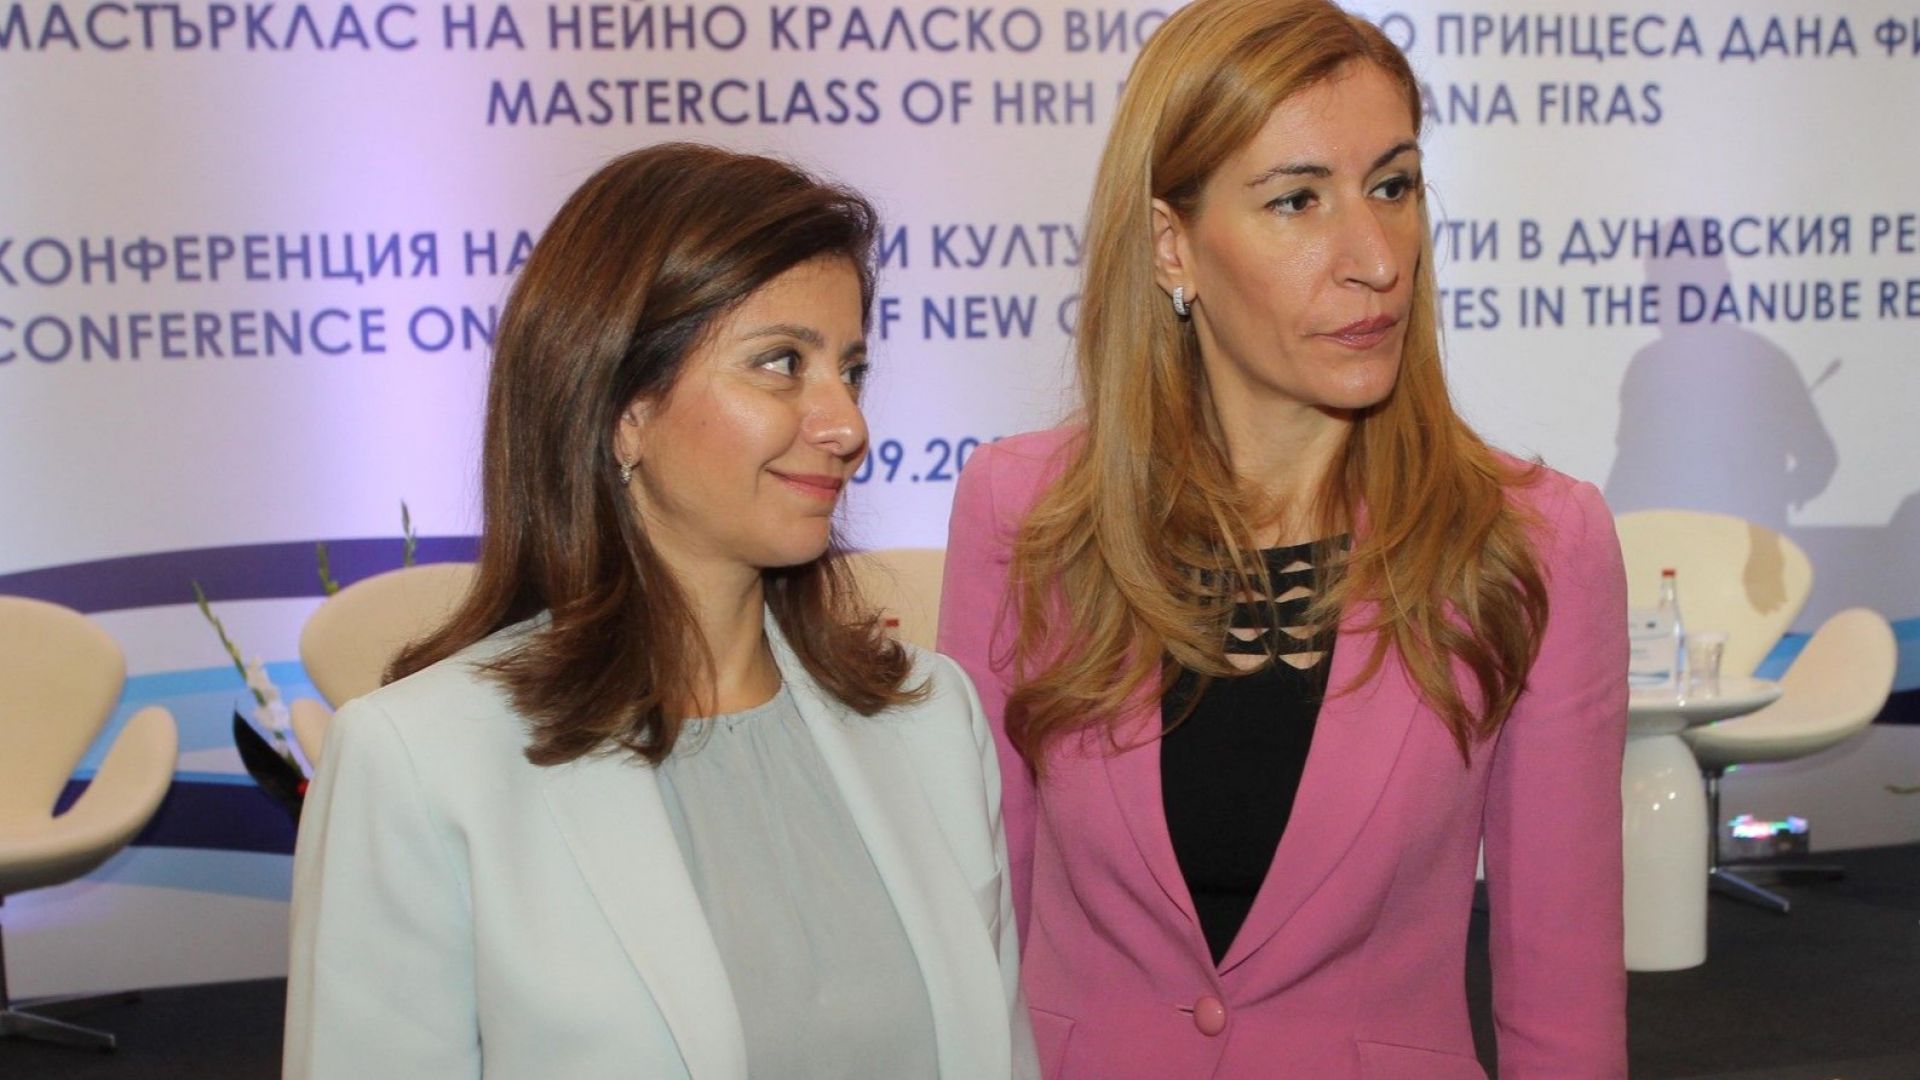 Принцеса Дана Фирас: Визитата ми в България е нещо специално за мен